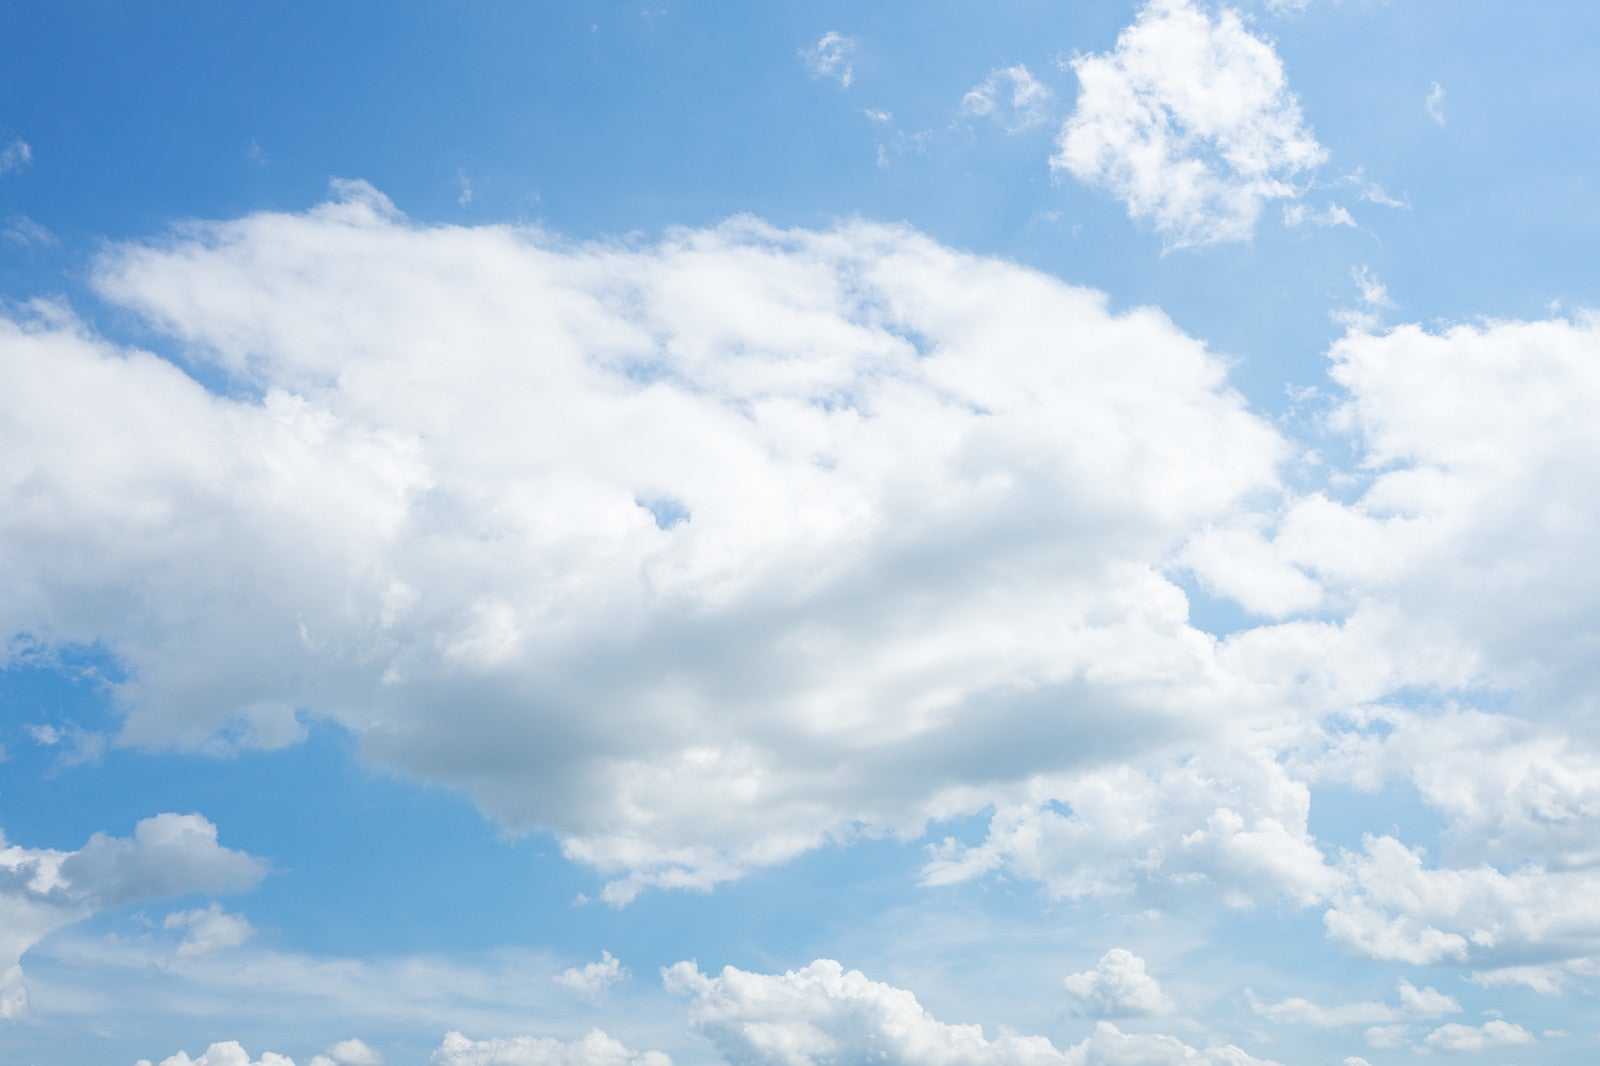 「雲と青空の様子」の写真